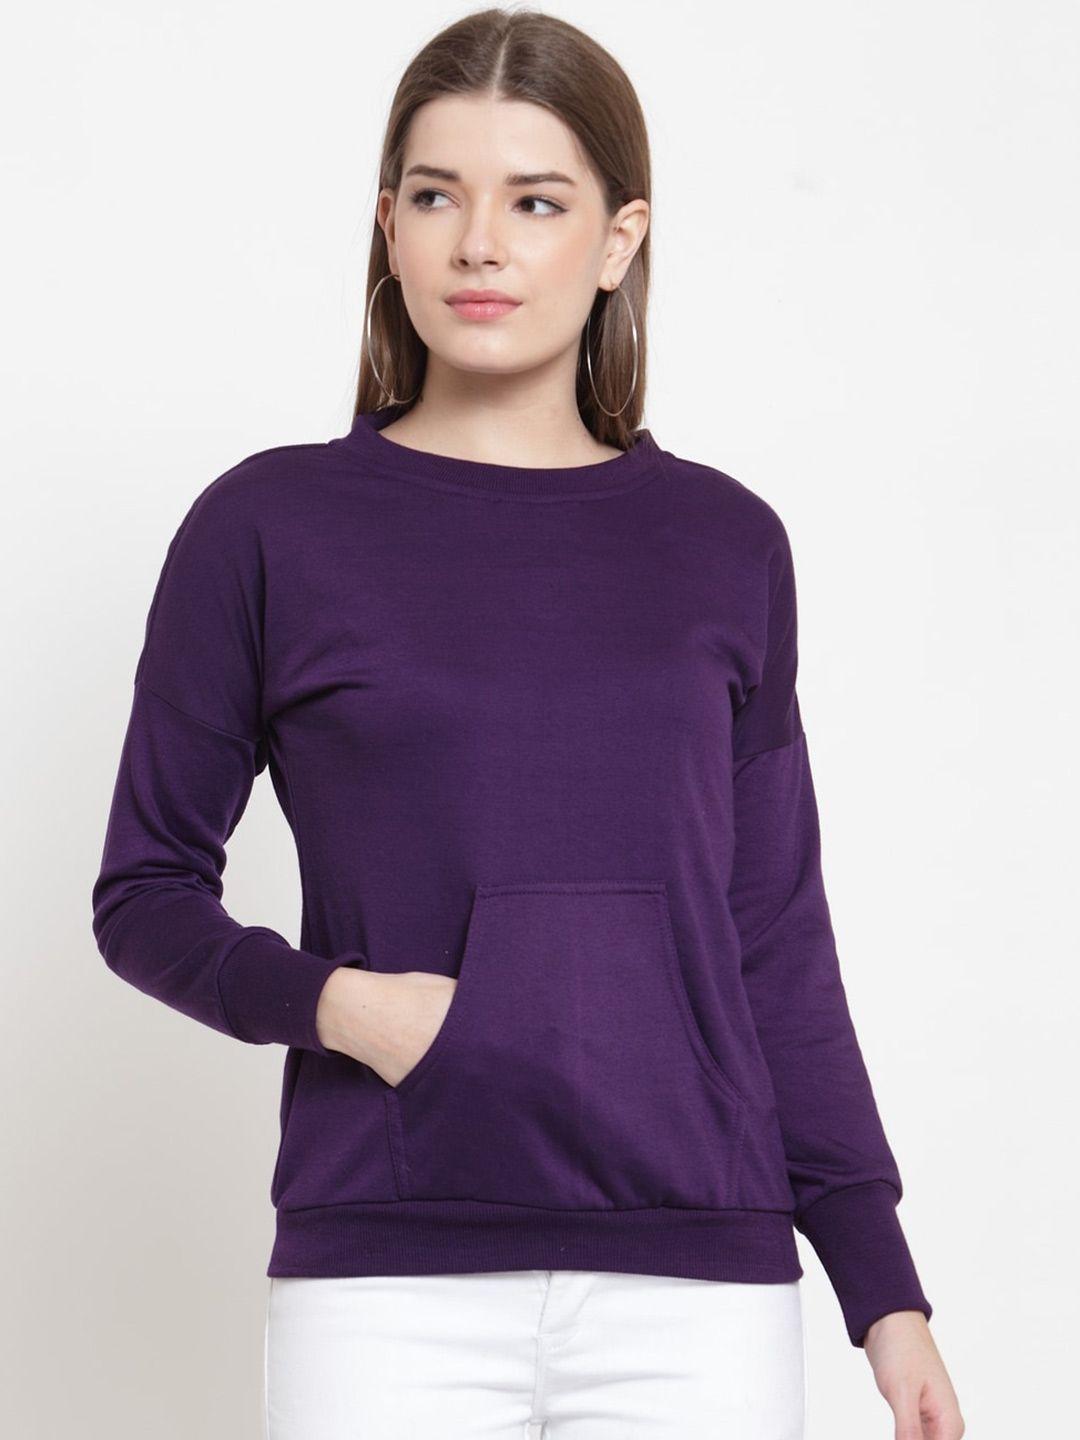 baesd-women-purple-sweatshirt